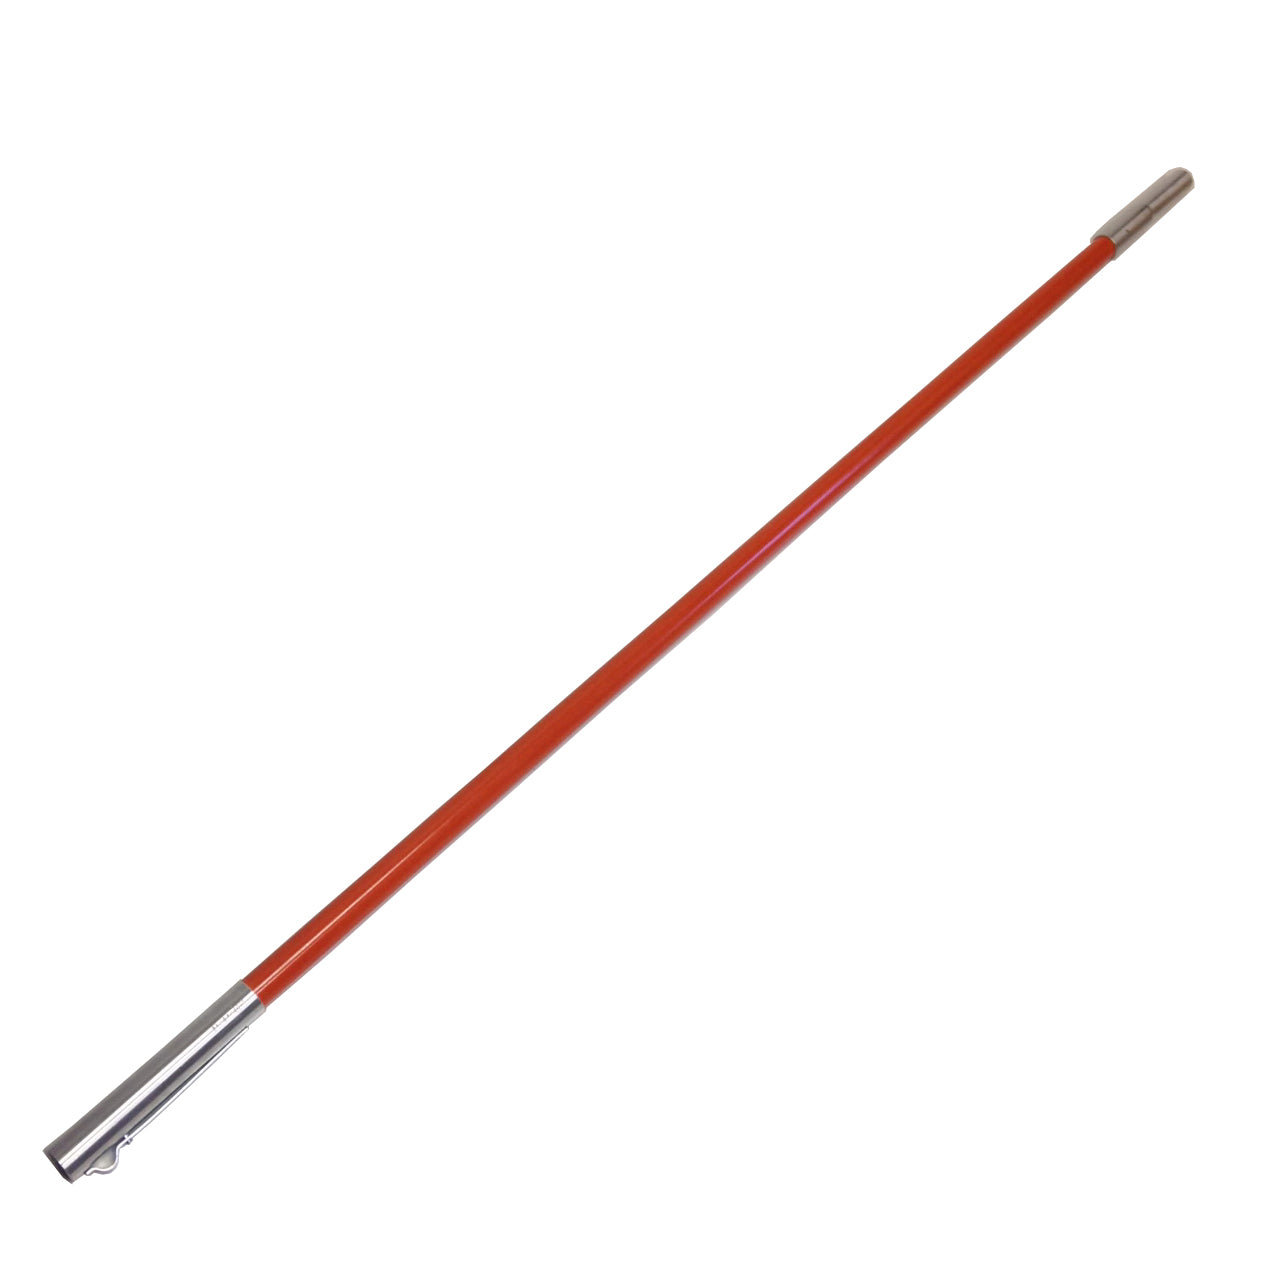 Steel Reinforced Fiberglass Pole